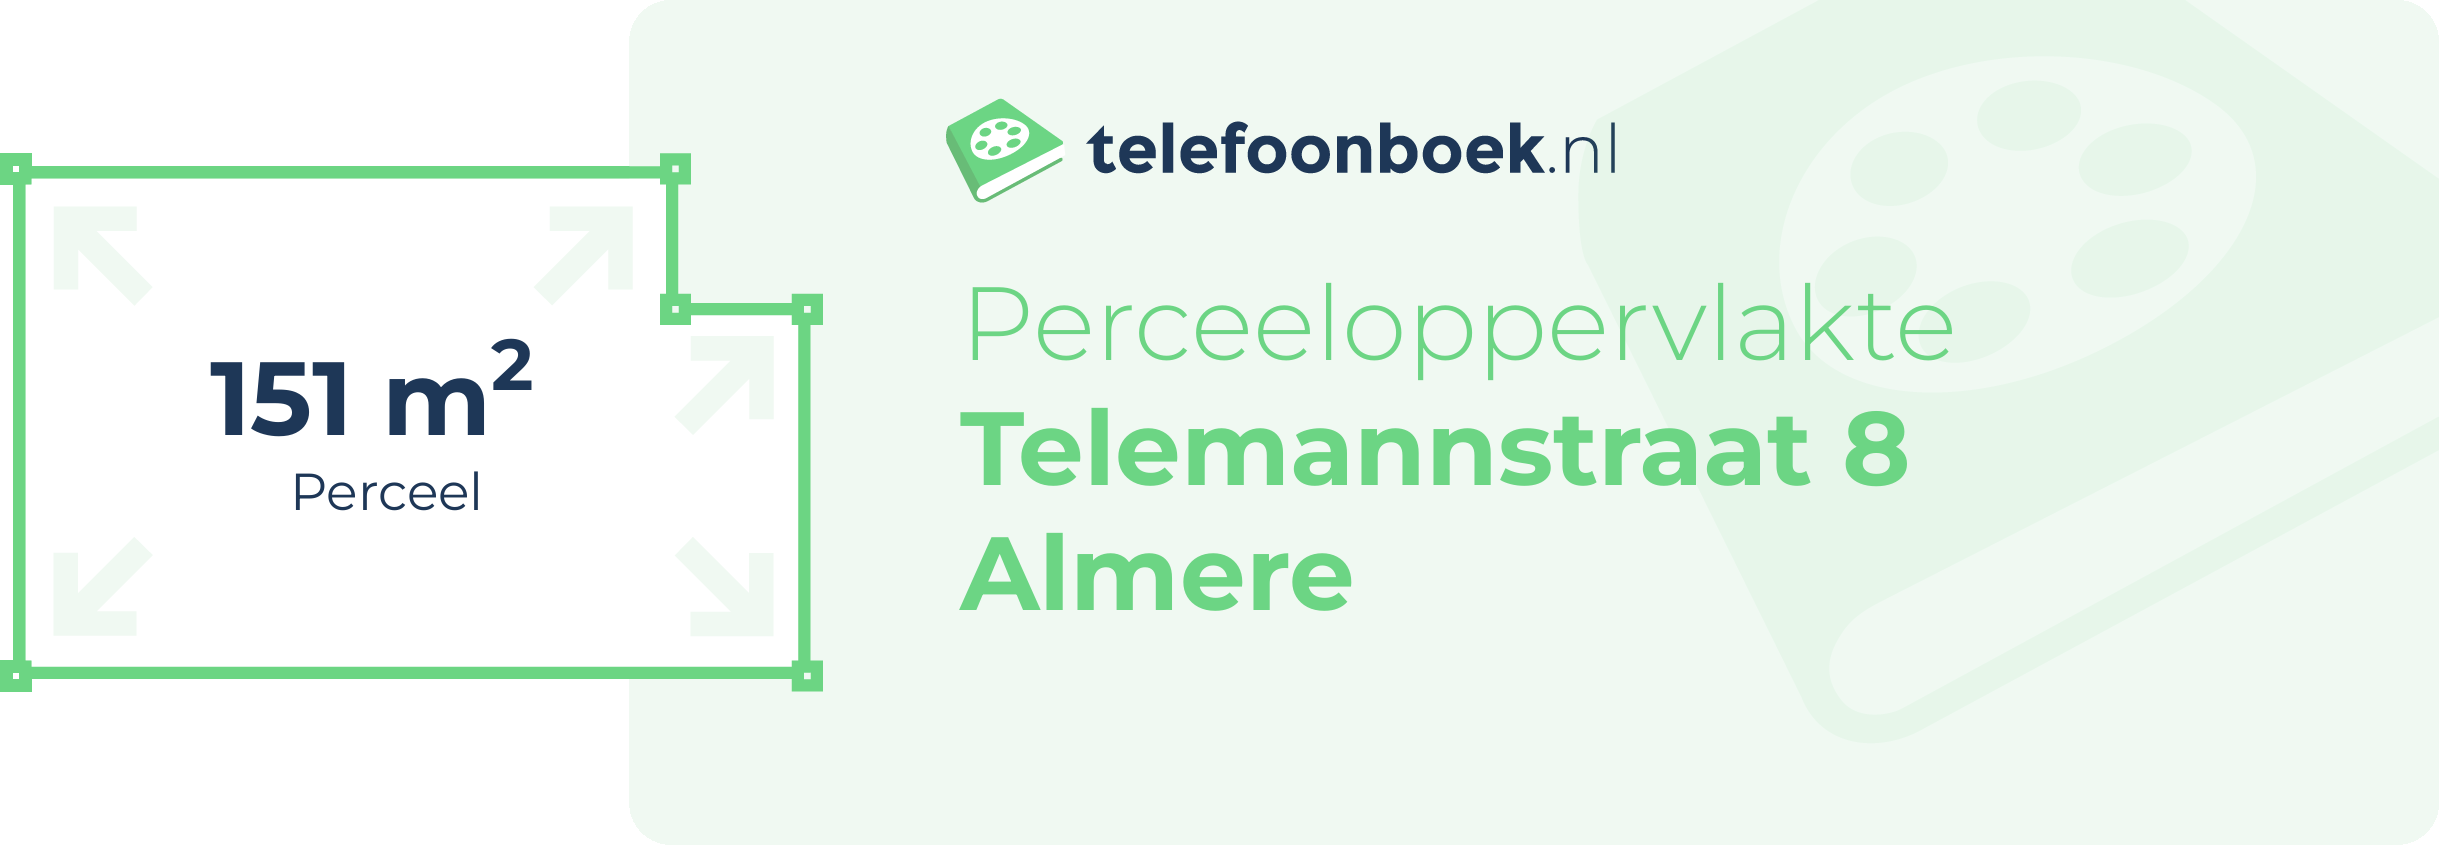 Perceeloppervlakte Telemannstraat 8 Almere